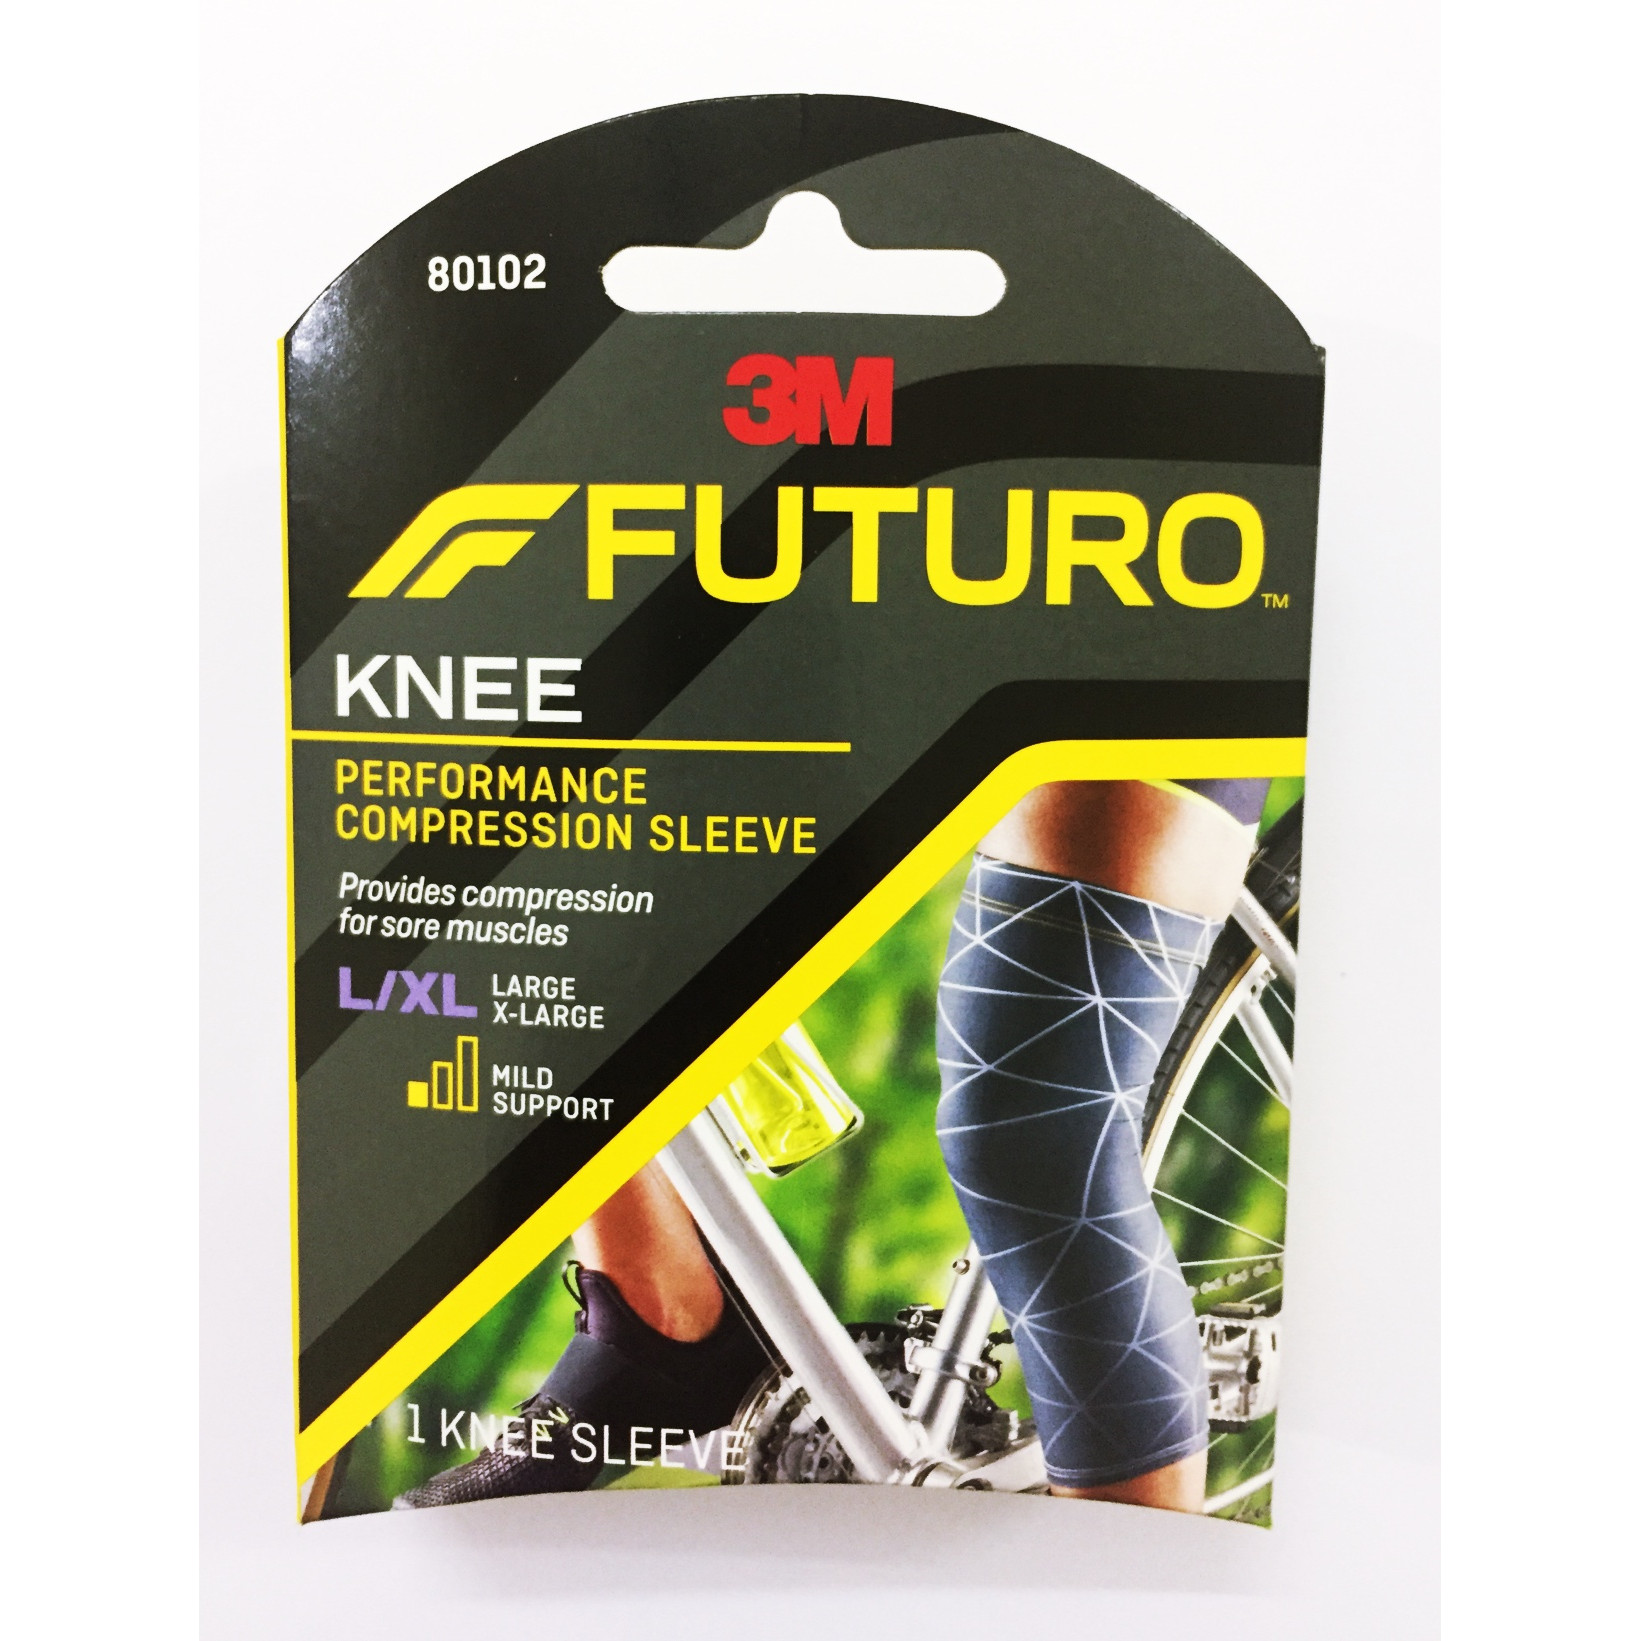 Băng hỗ trợ chân, bắp chân và đầu gối Futuro 80102 size L/XL